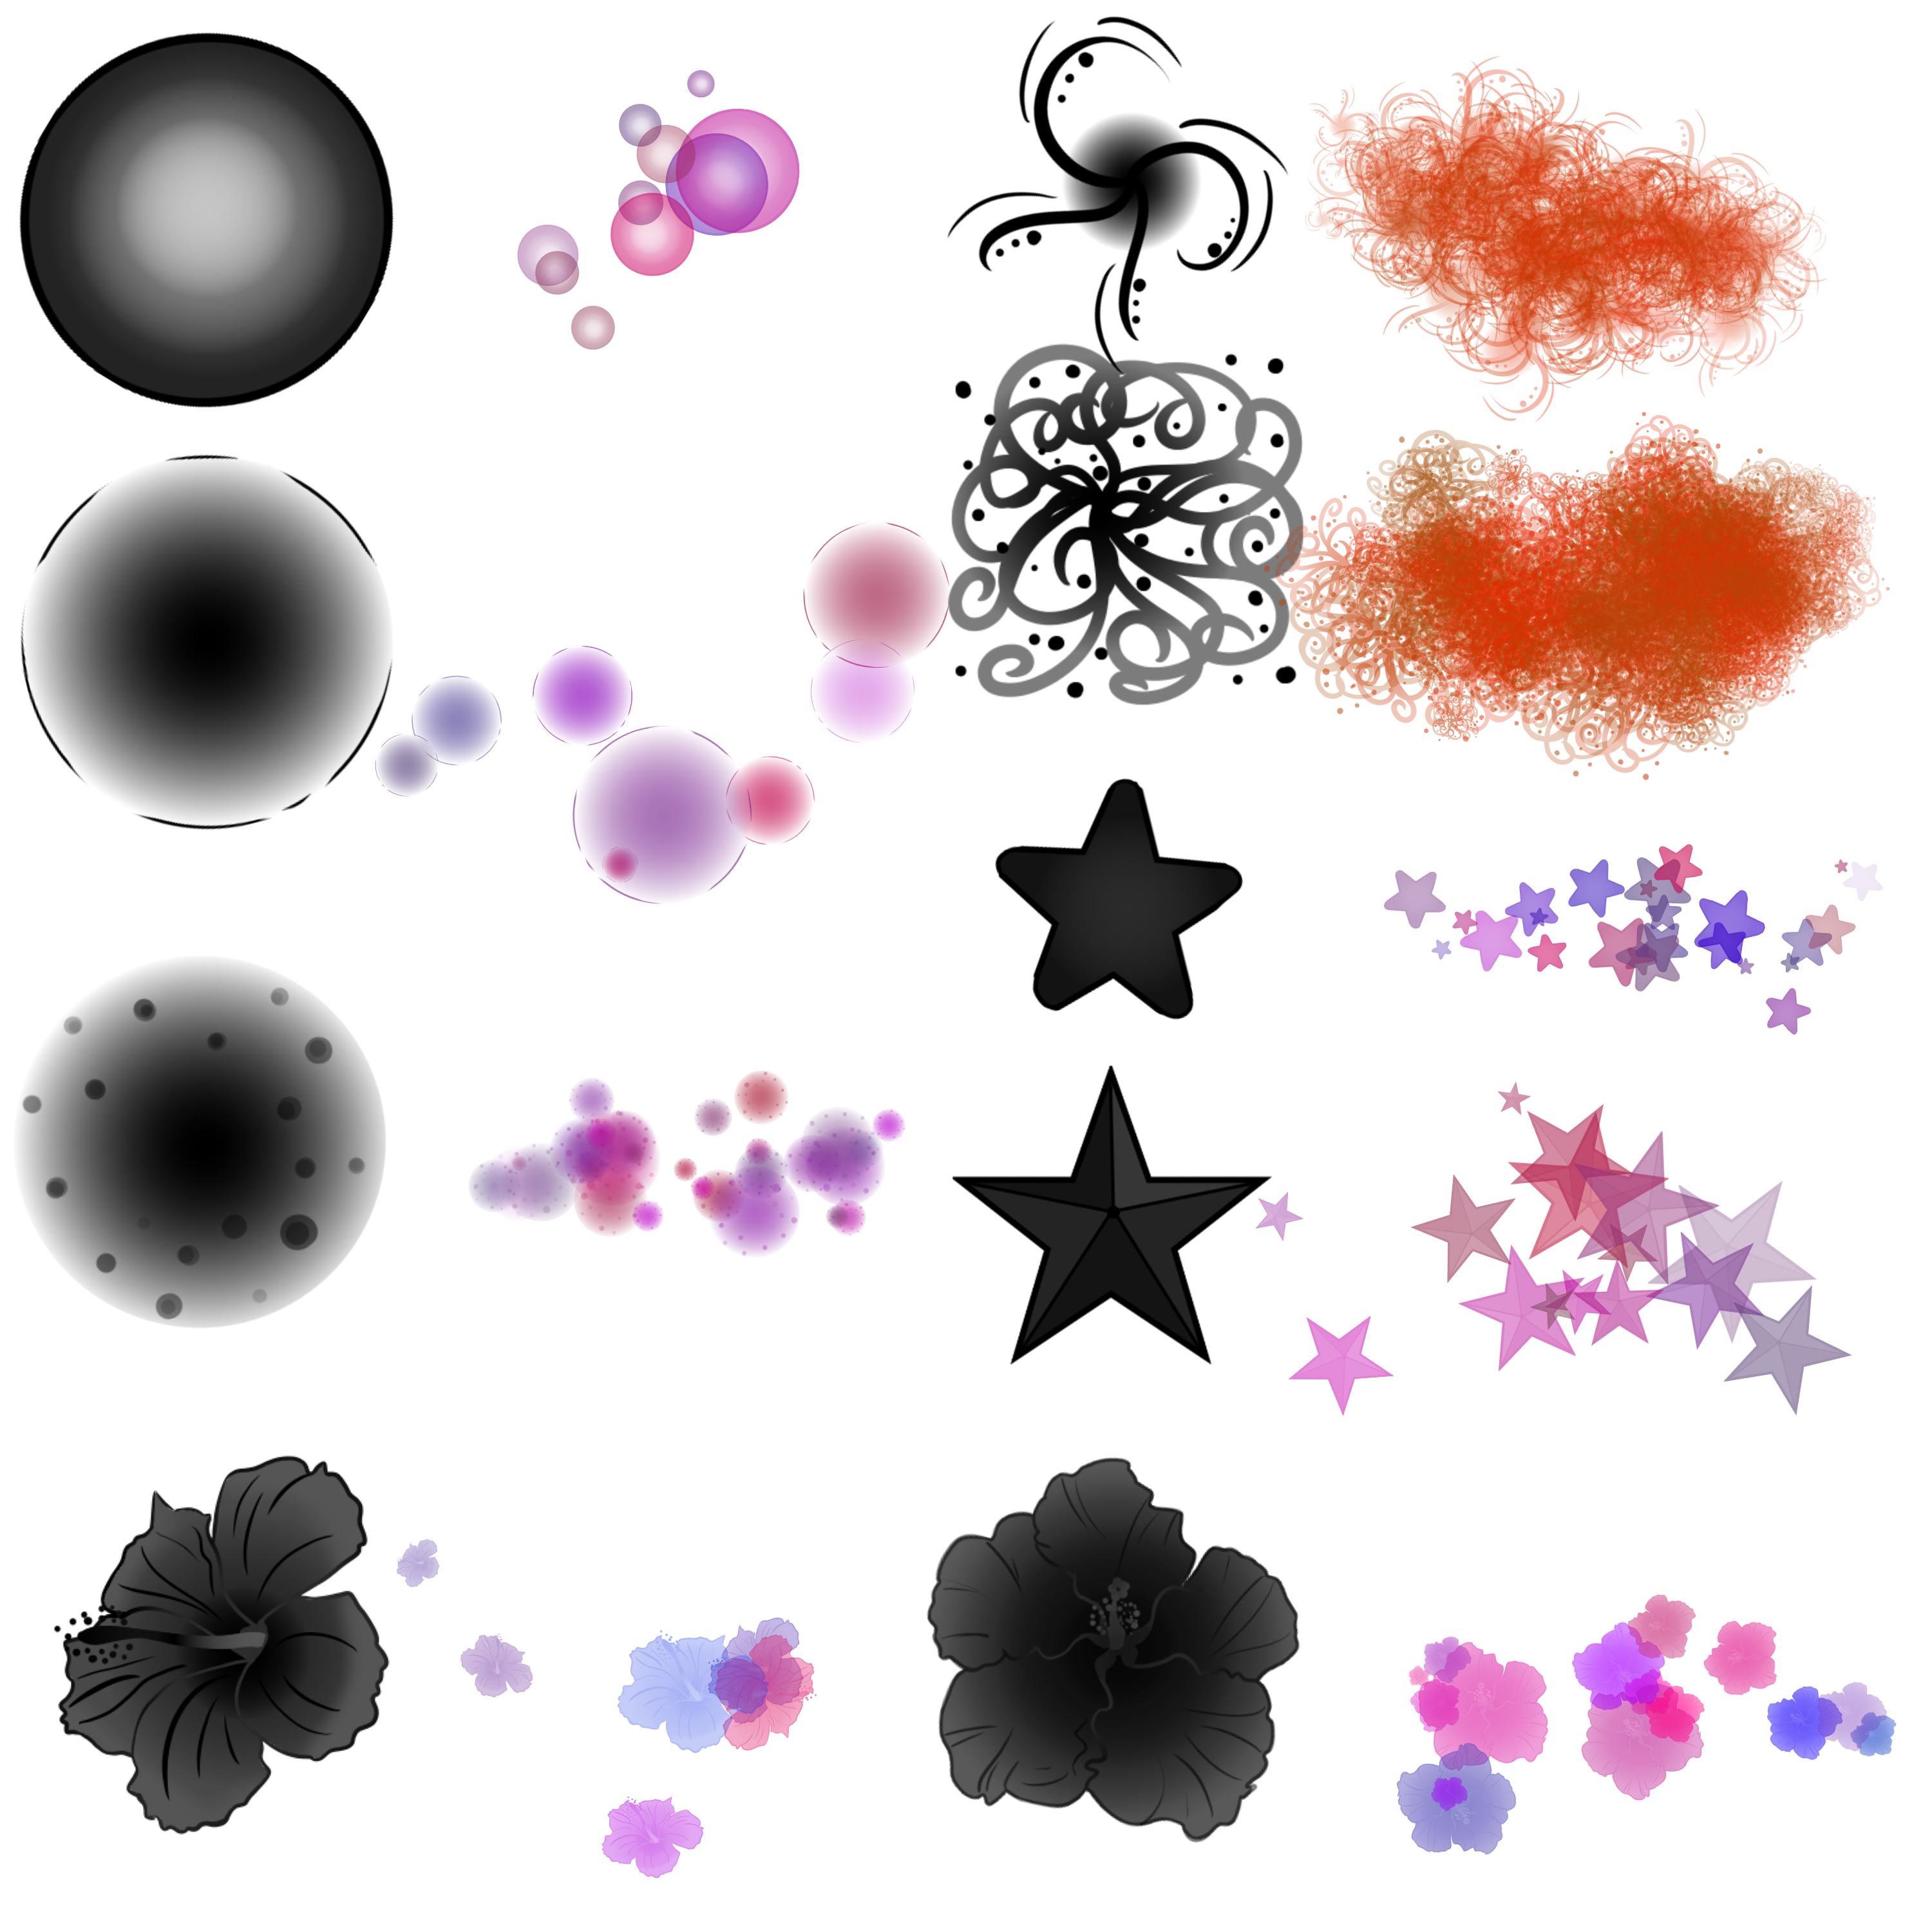 半透明泡泡、艺术花朵、星星图案、鲜花花朵PS笔刷素材（PNG透明图片格式）